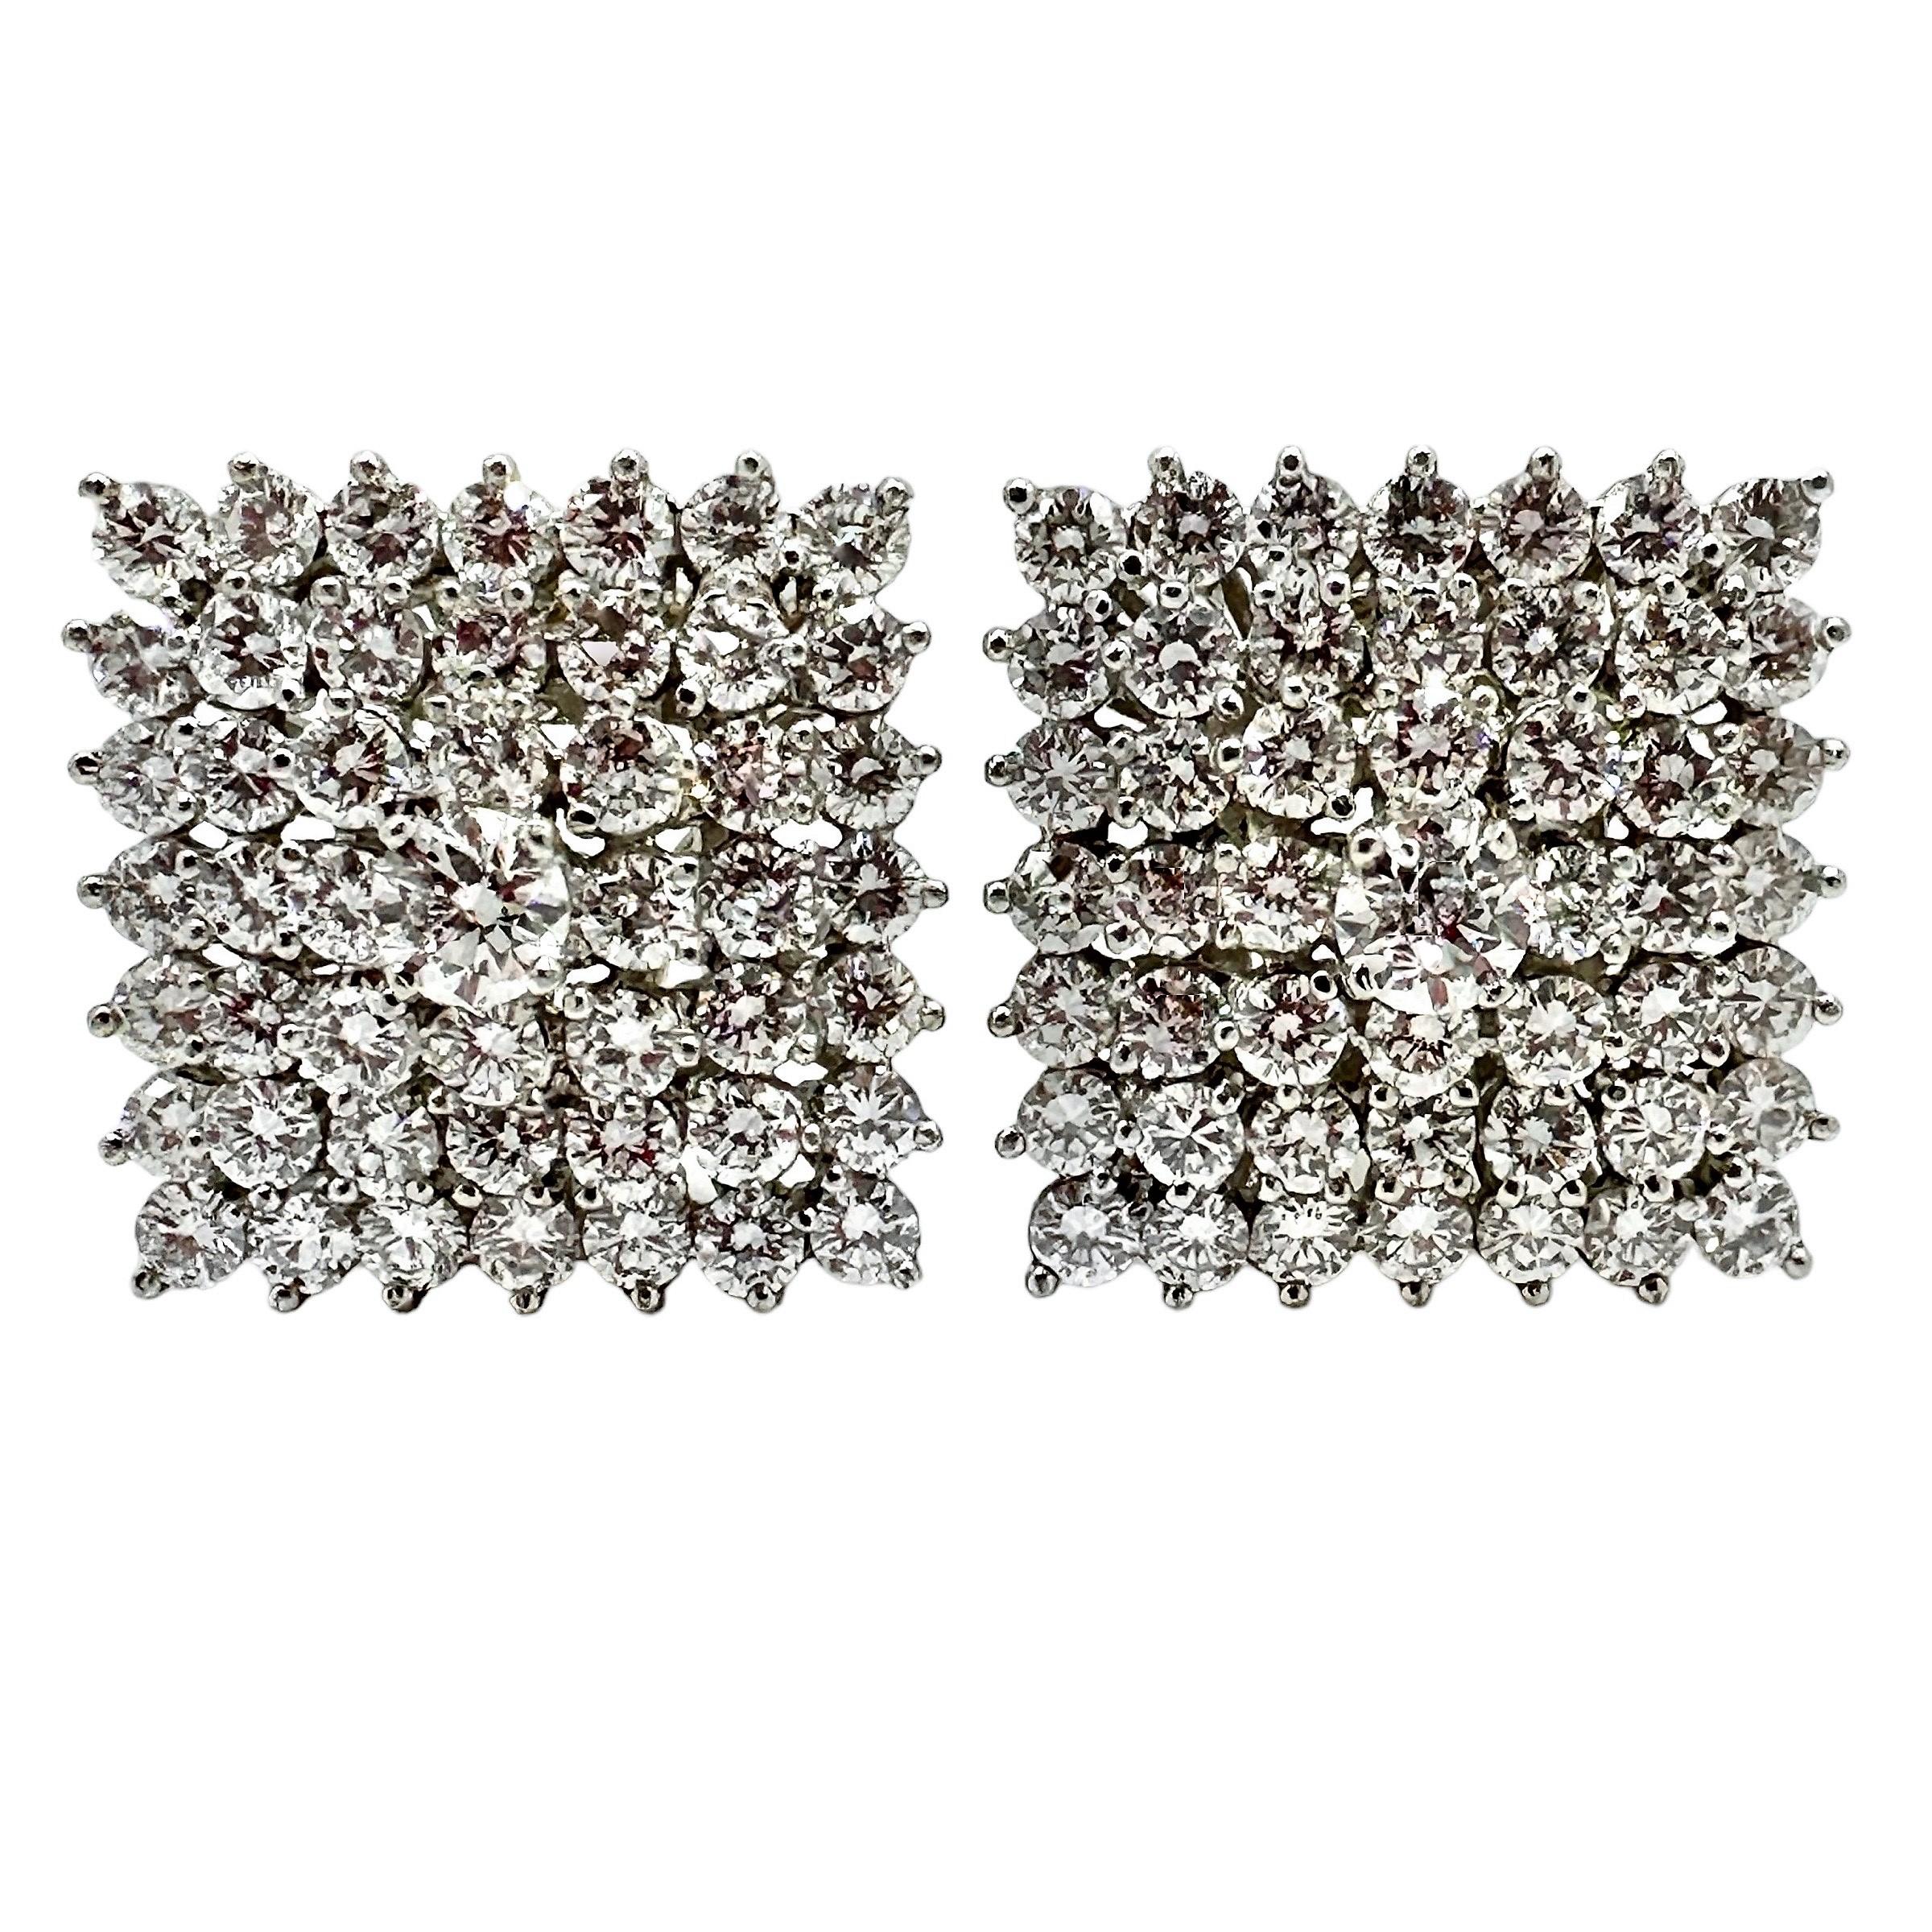 Dieses verführerische Paar Tiffany-Ohrringe im Vintage-Stil aus Platin ist mit insgesamt 98 Diamanten im Brillantschliff besetzt, wobei der Mittelstein jeweils etwa 0,35 ct wiegt. Das Paar funkelt wunderschön. Das ungefähre Gesamtgewicht der